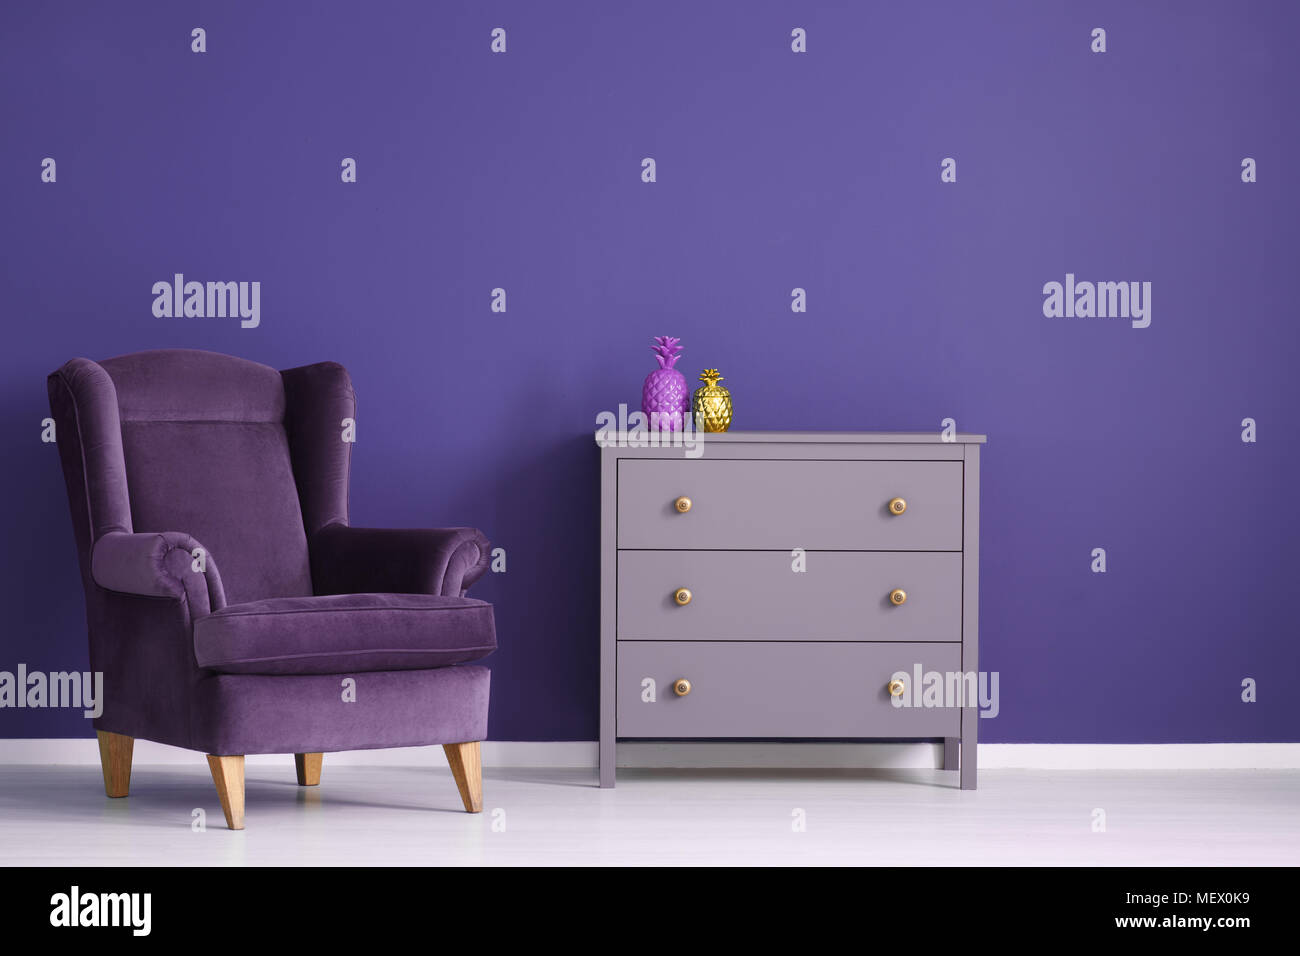 L'ananas sur l'or du cabinet violet à côté d'un fauteuil de velours pourpre dans le salon intérieur Banque D'Images